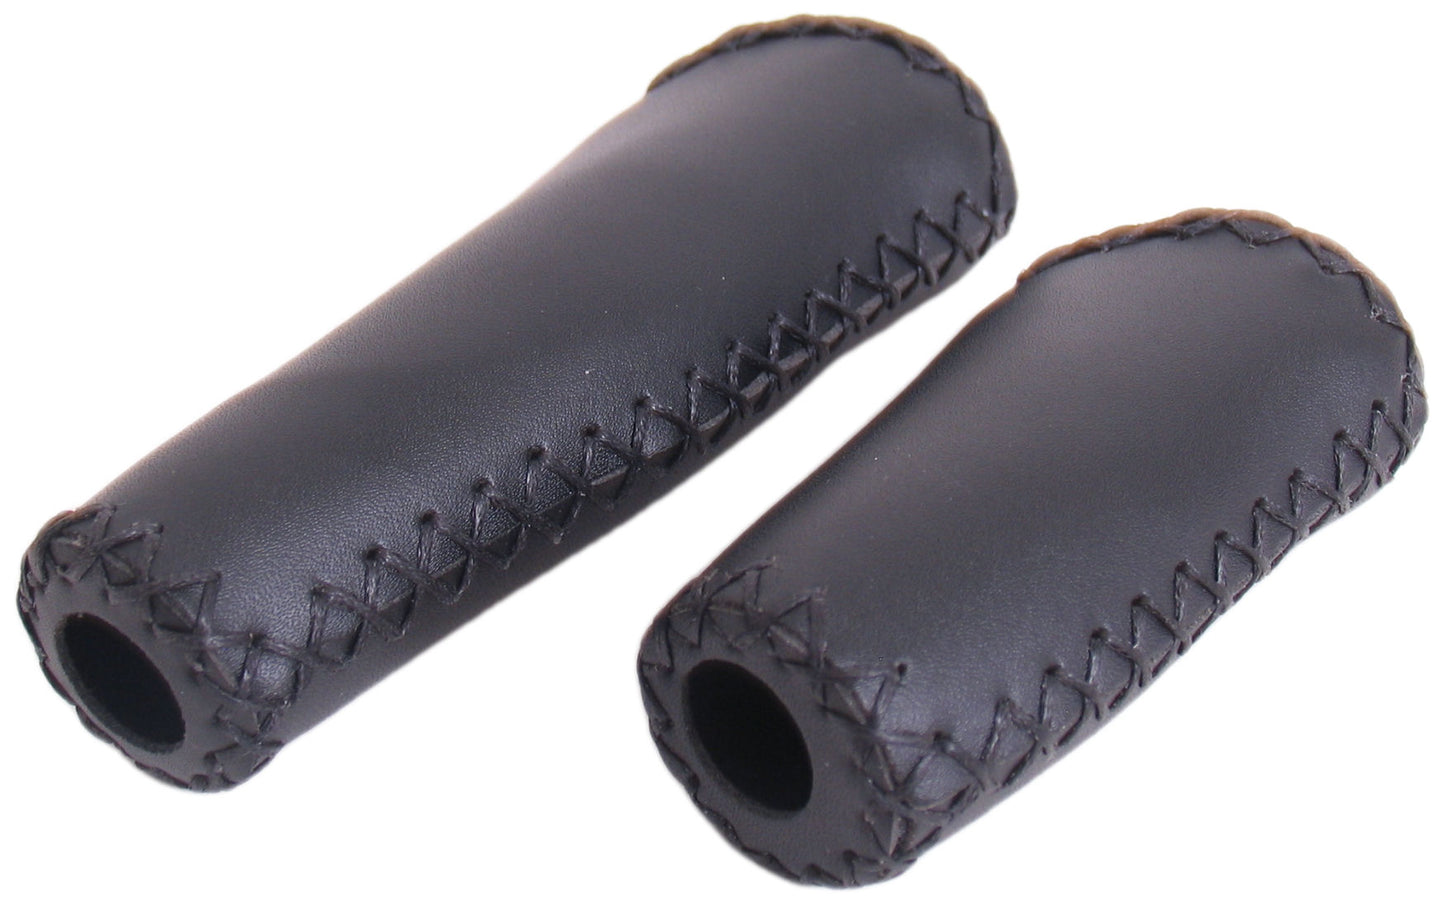 L'impugnatura in pelle edge - set di manico in pelle ergonomica - 135 mm 92 mm - nero